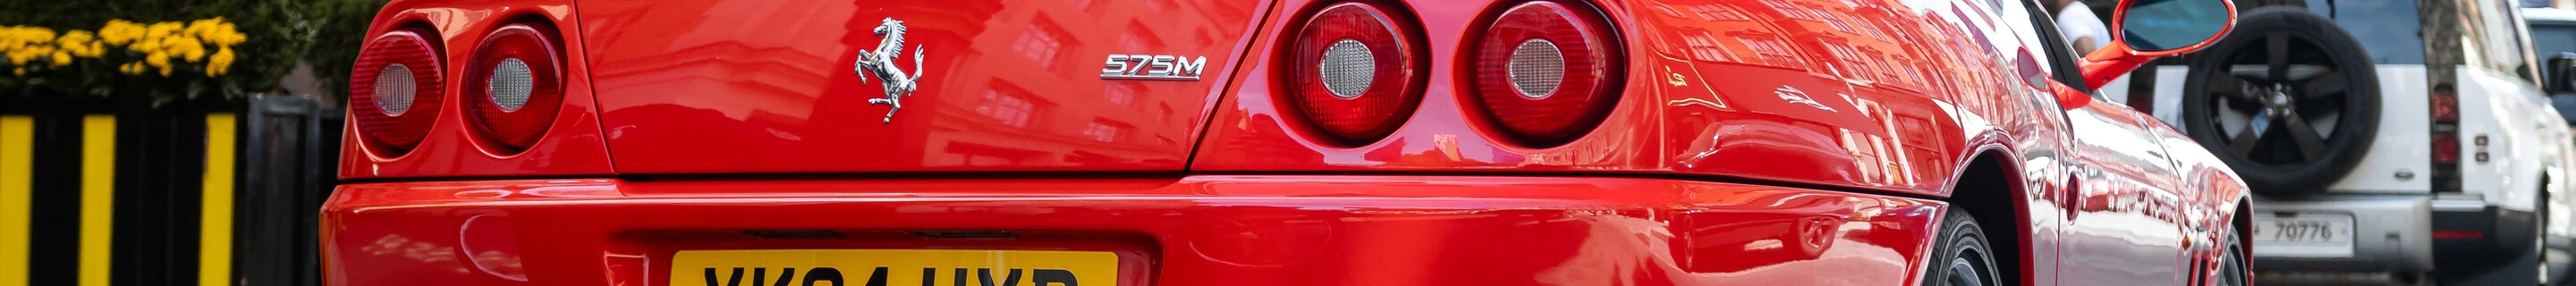 Ferrari 575 M Maranello GTC